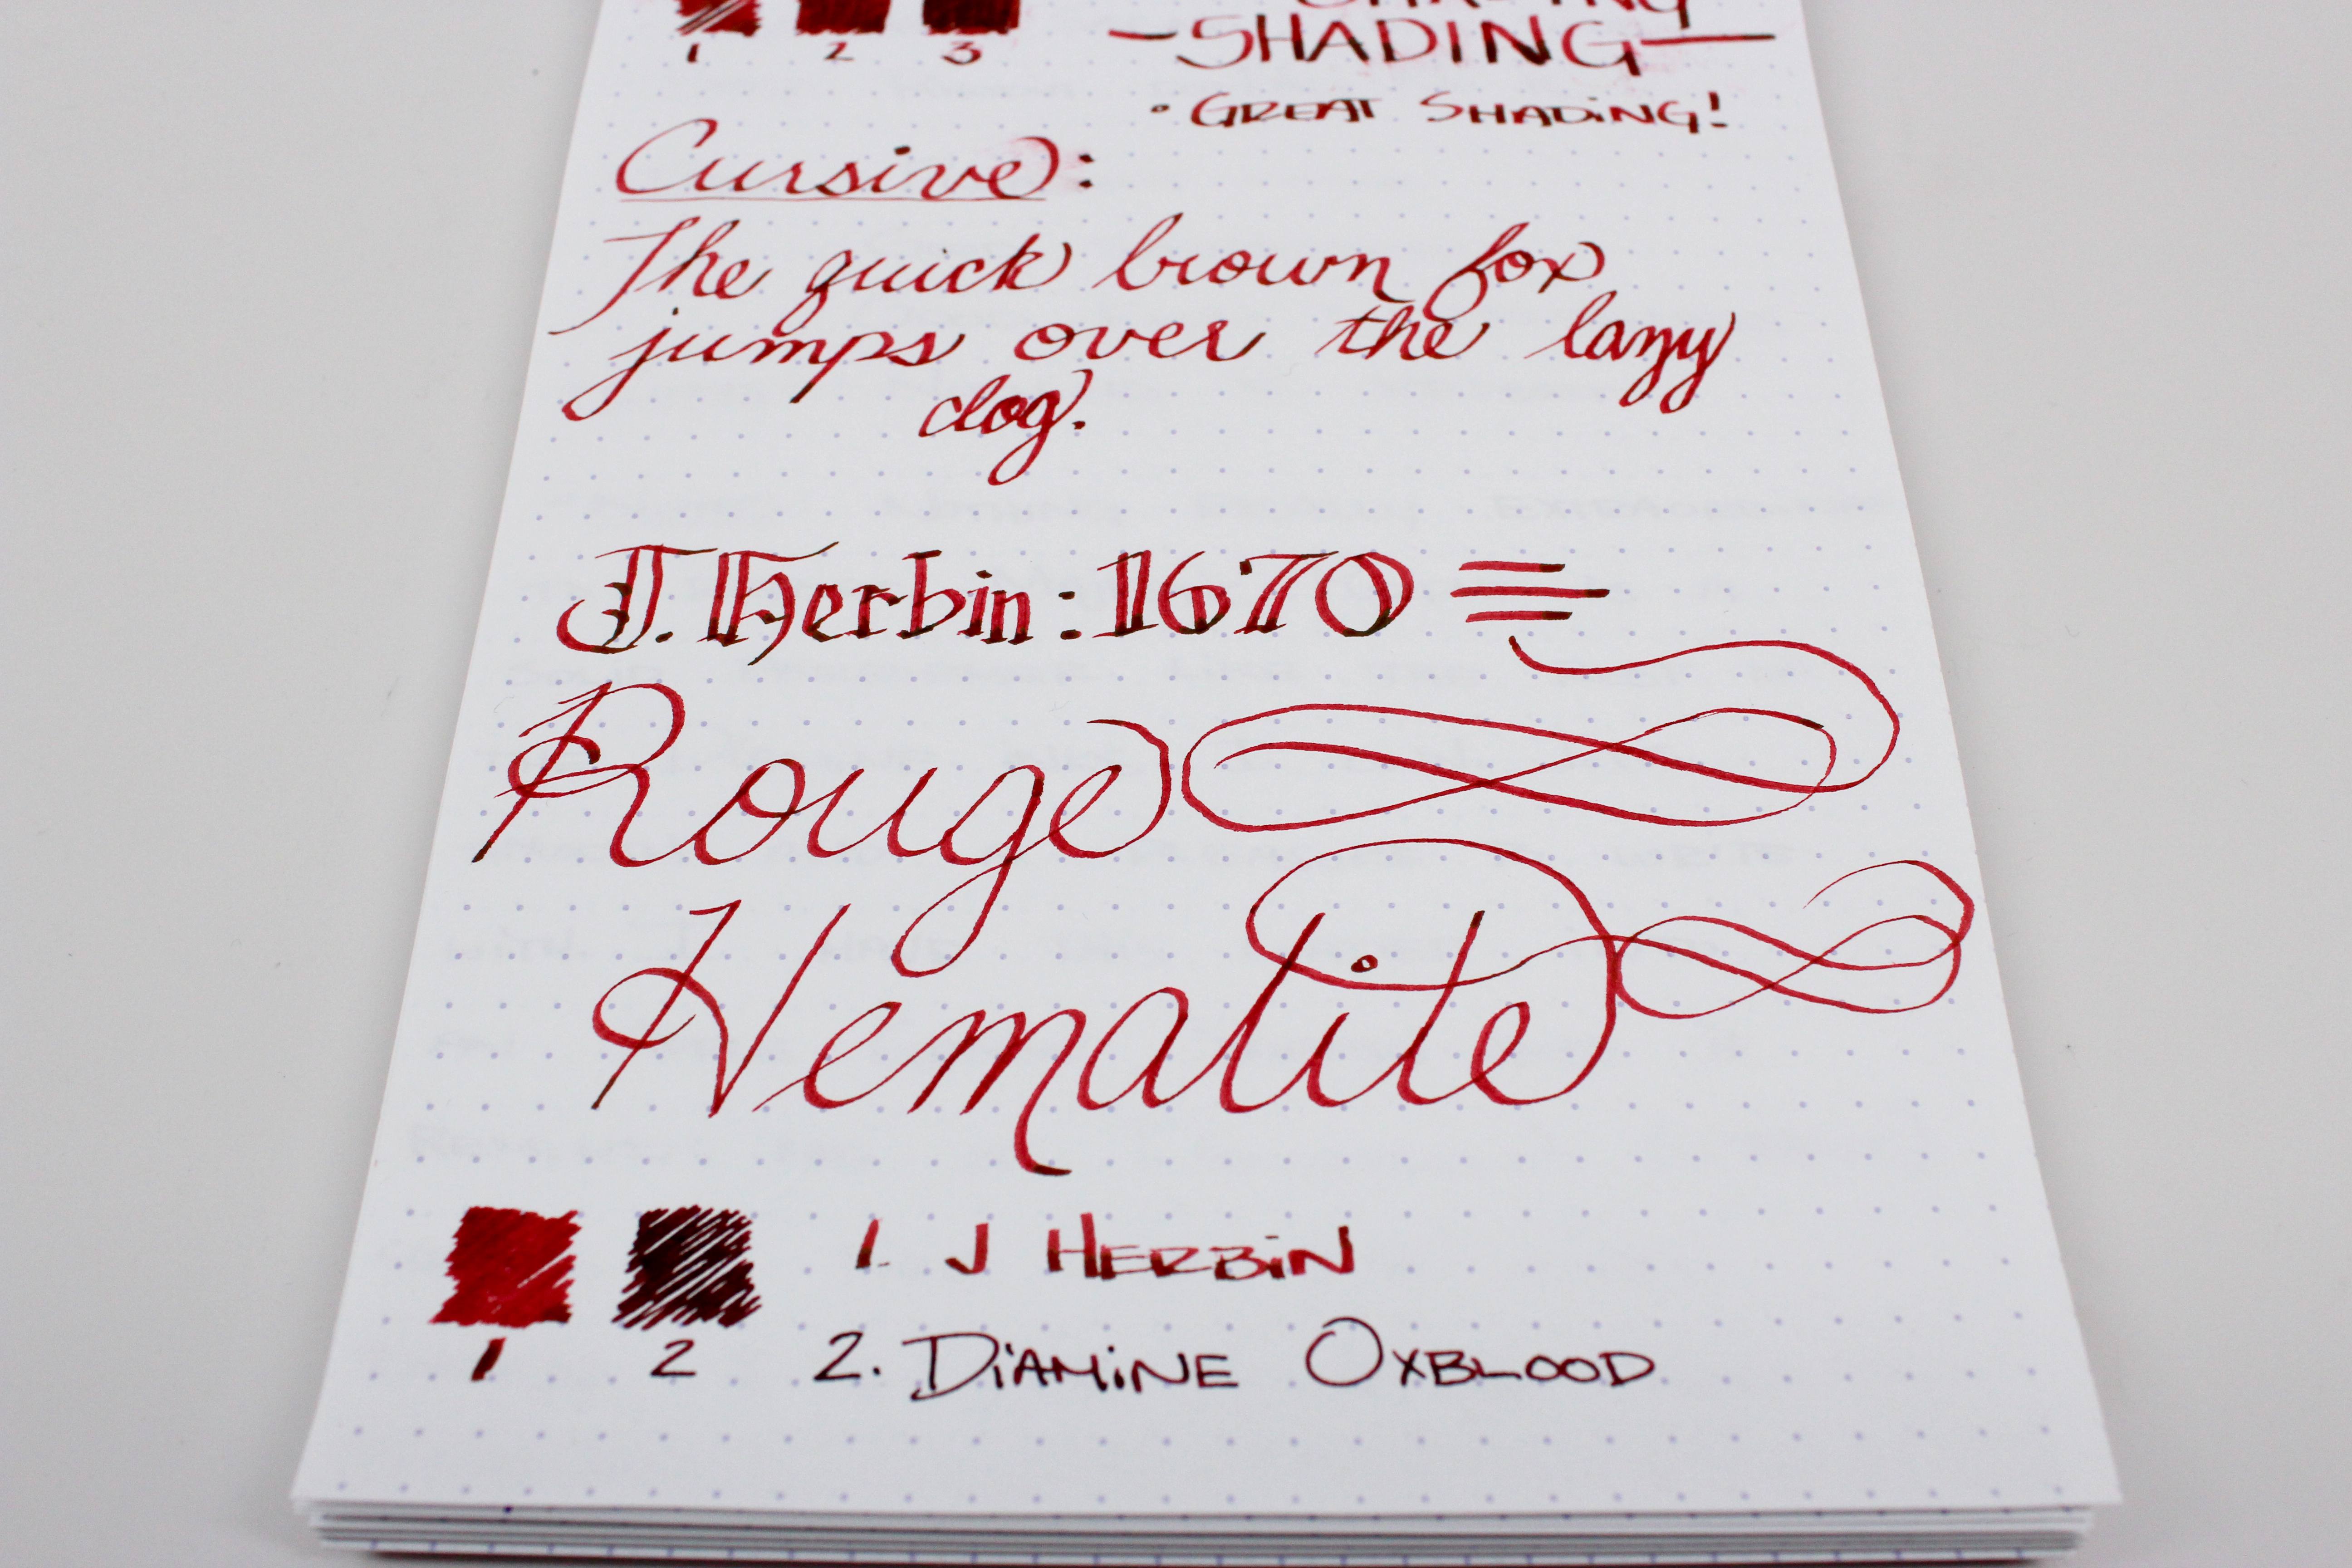 J. Herbin 1670 Rouge Hematite – Handwritten Ink Review